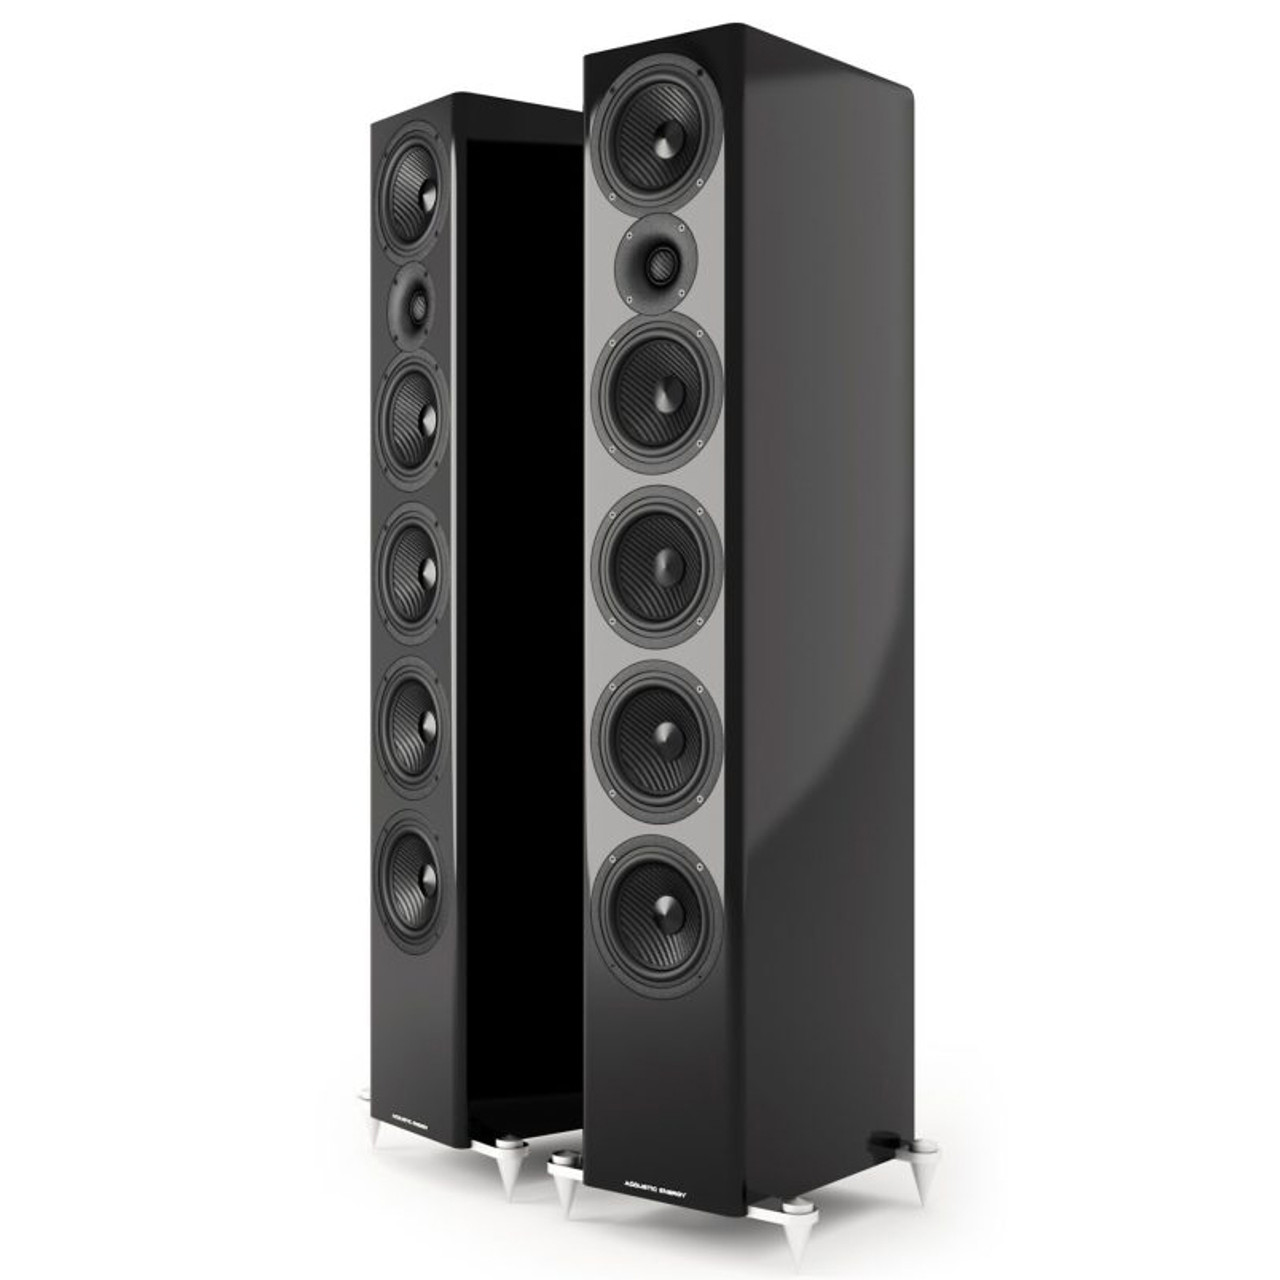 Acoustic Energy AE520 speakers